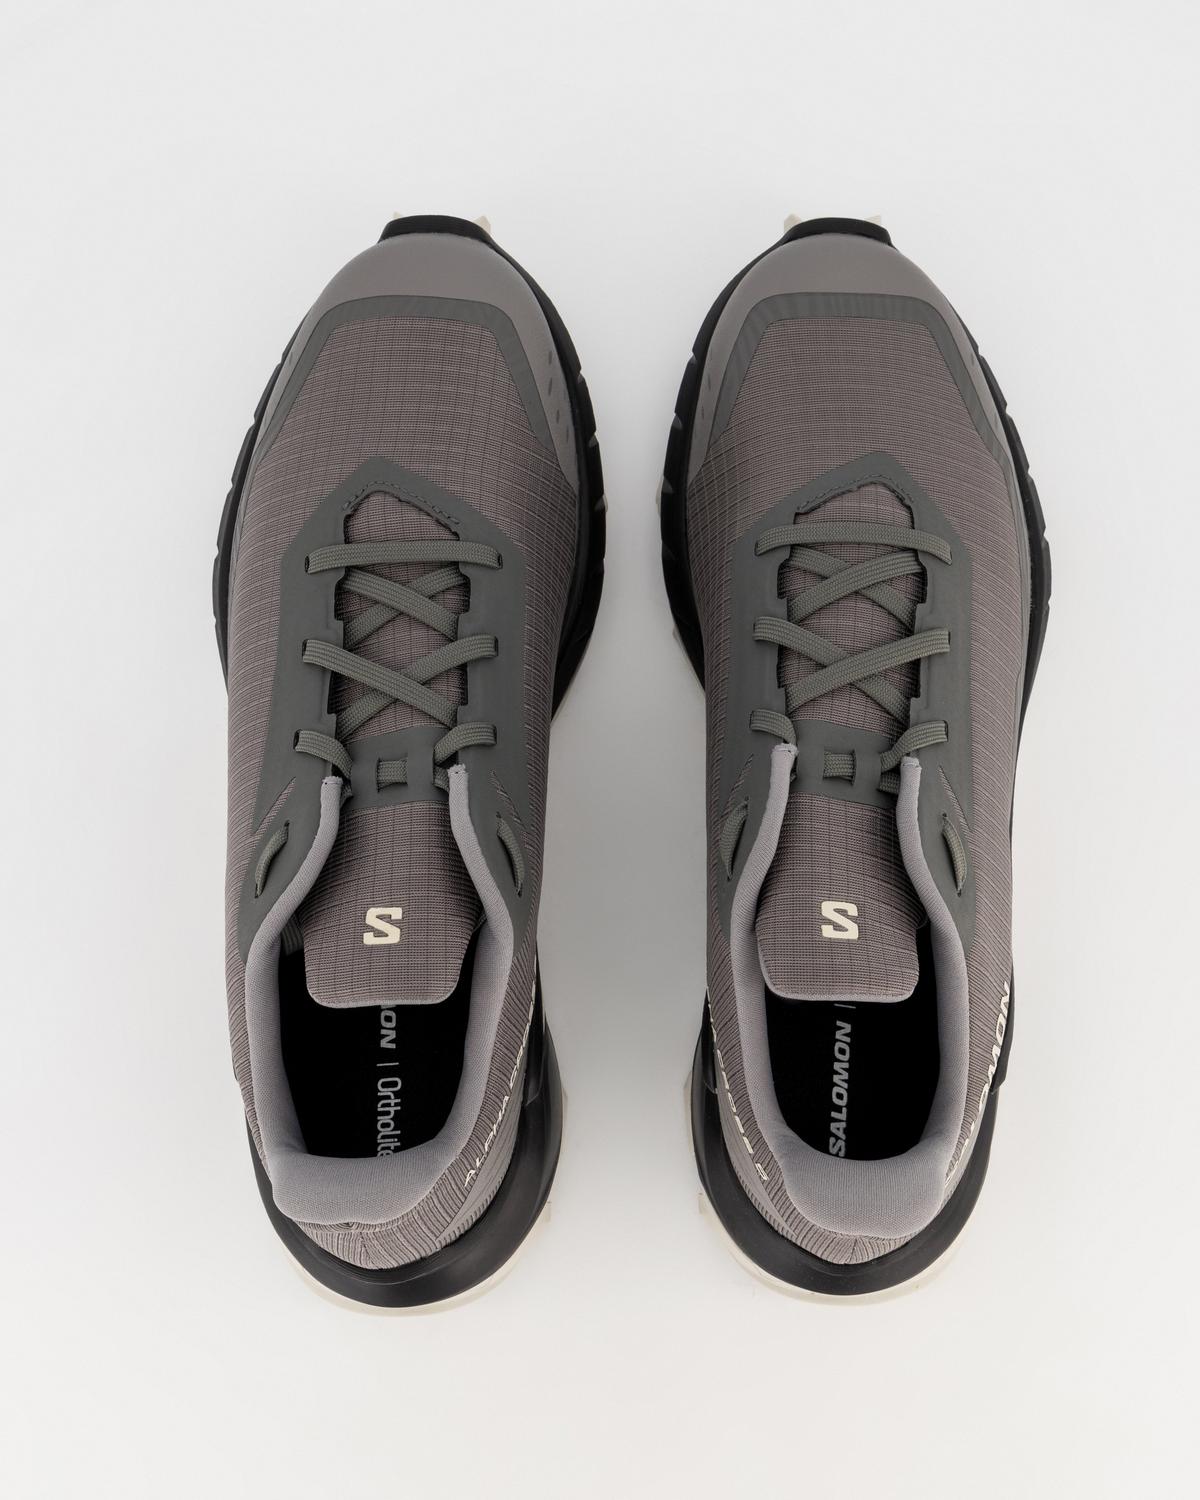 Salomon Men’s ALPHACROSS 5 Trail Running Shoes  -  Pewter